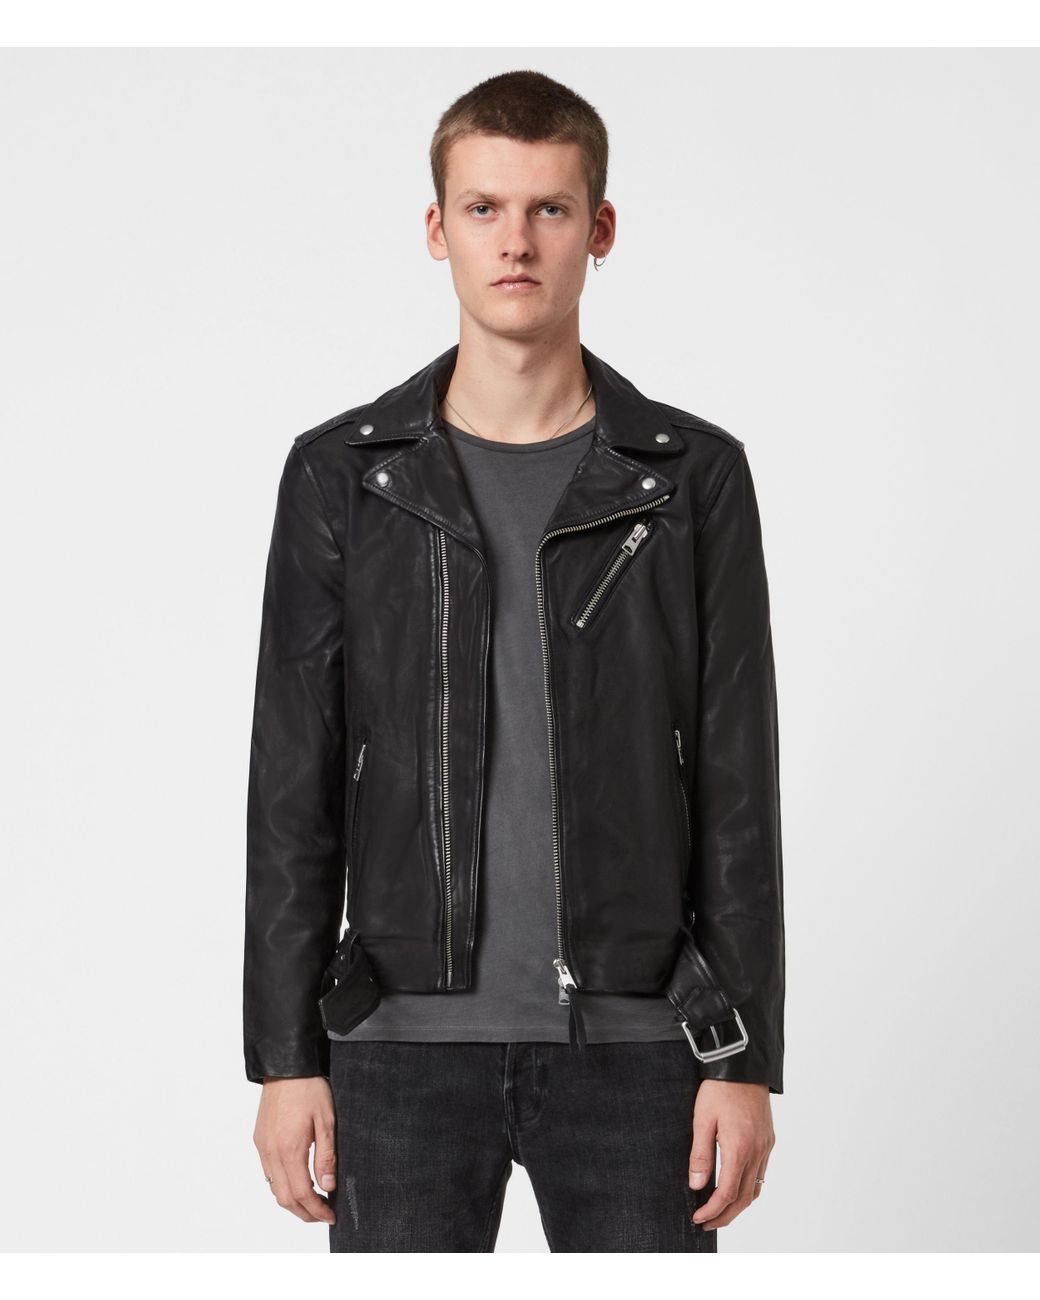 AllSaints Leather Slim Fit rigg Biker Jacket, in Black for Men | Lyst UK